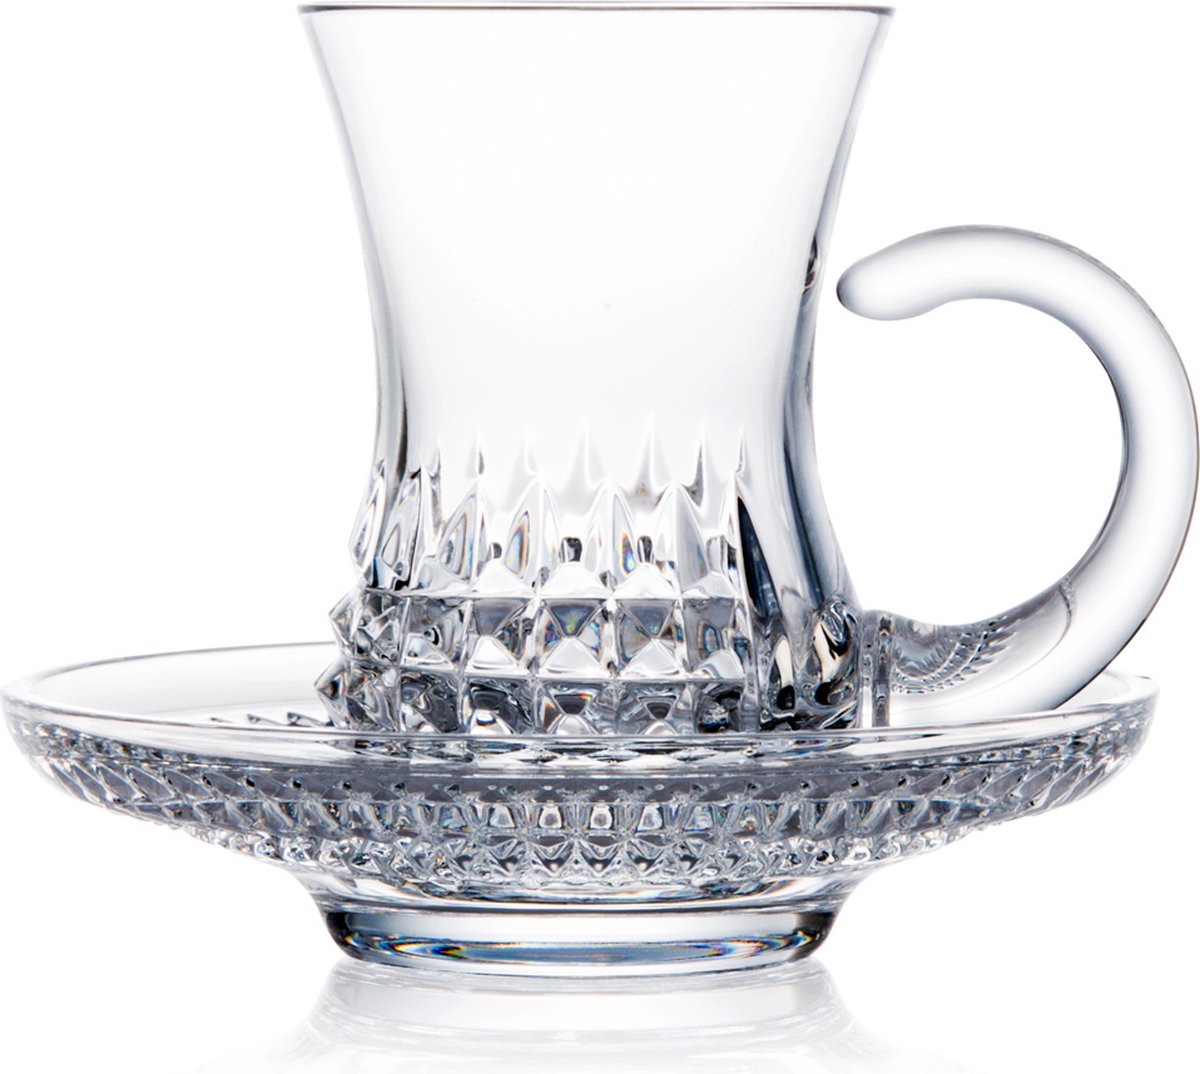 ROGASKA 1665 - Diamond Kristallen koffieglas met schoteltje - set van 2 - Kerst cadeau - cadeau voor hem - cadeau voor haar - kristallen koffieglas